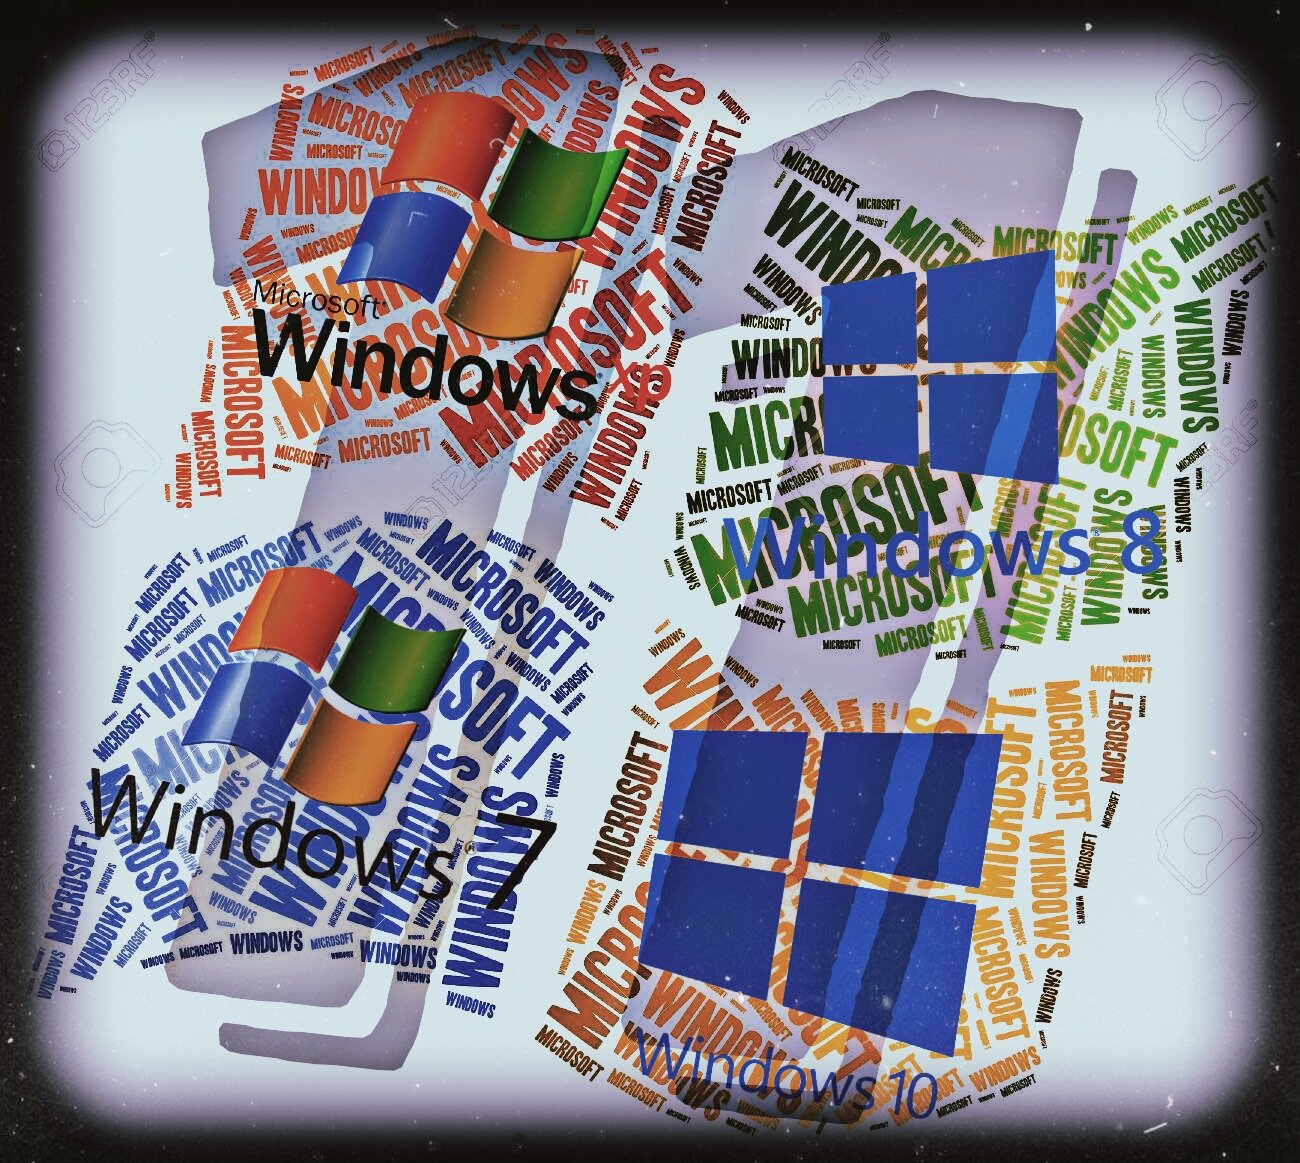 Загрузочная флешка с лучшими выпусками Windows - Лицензия.